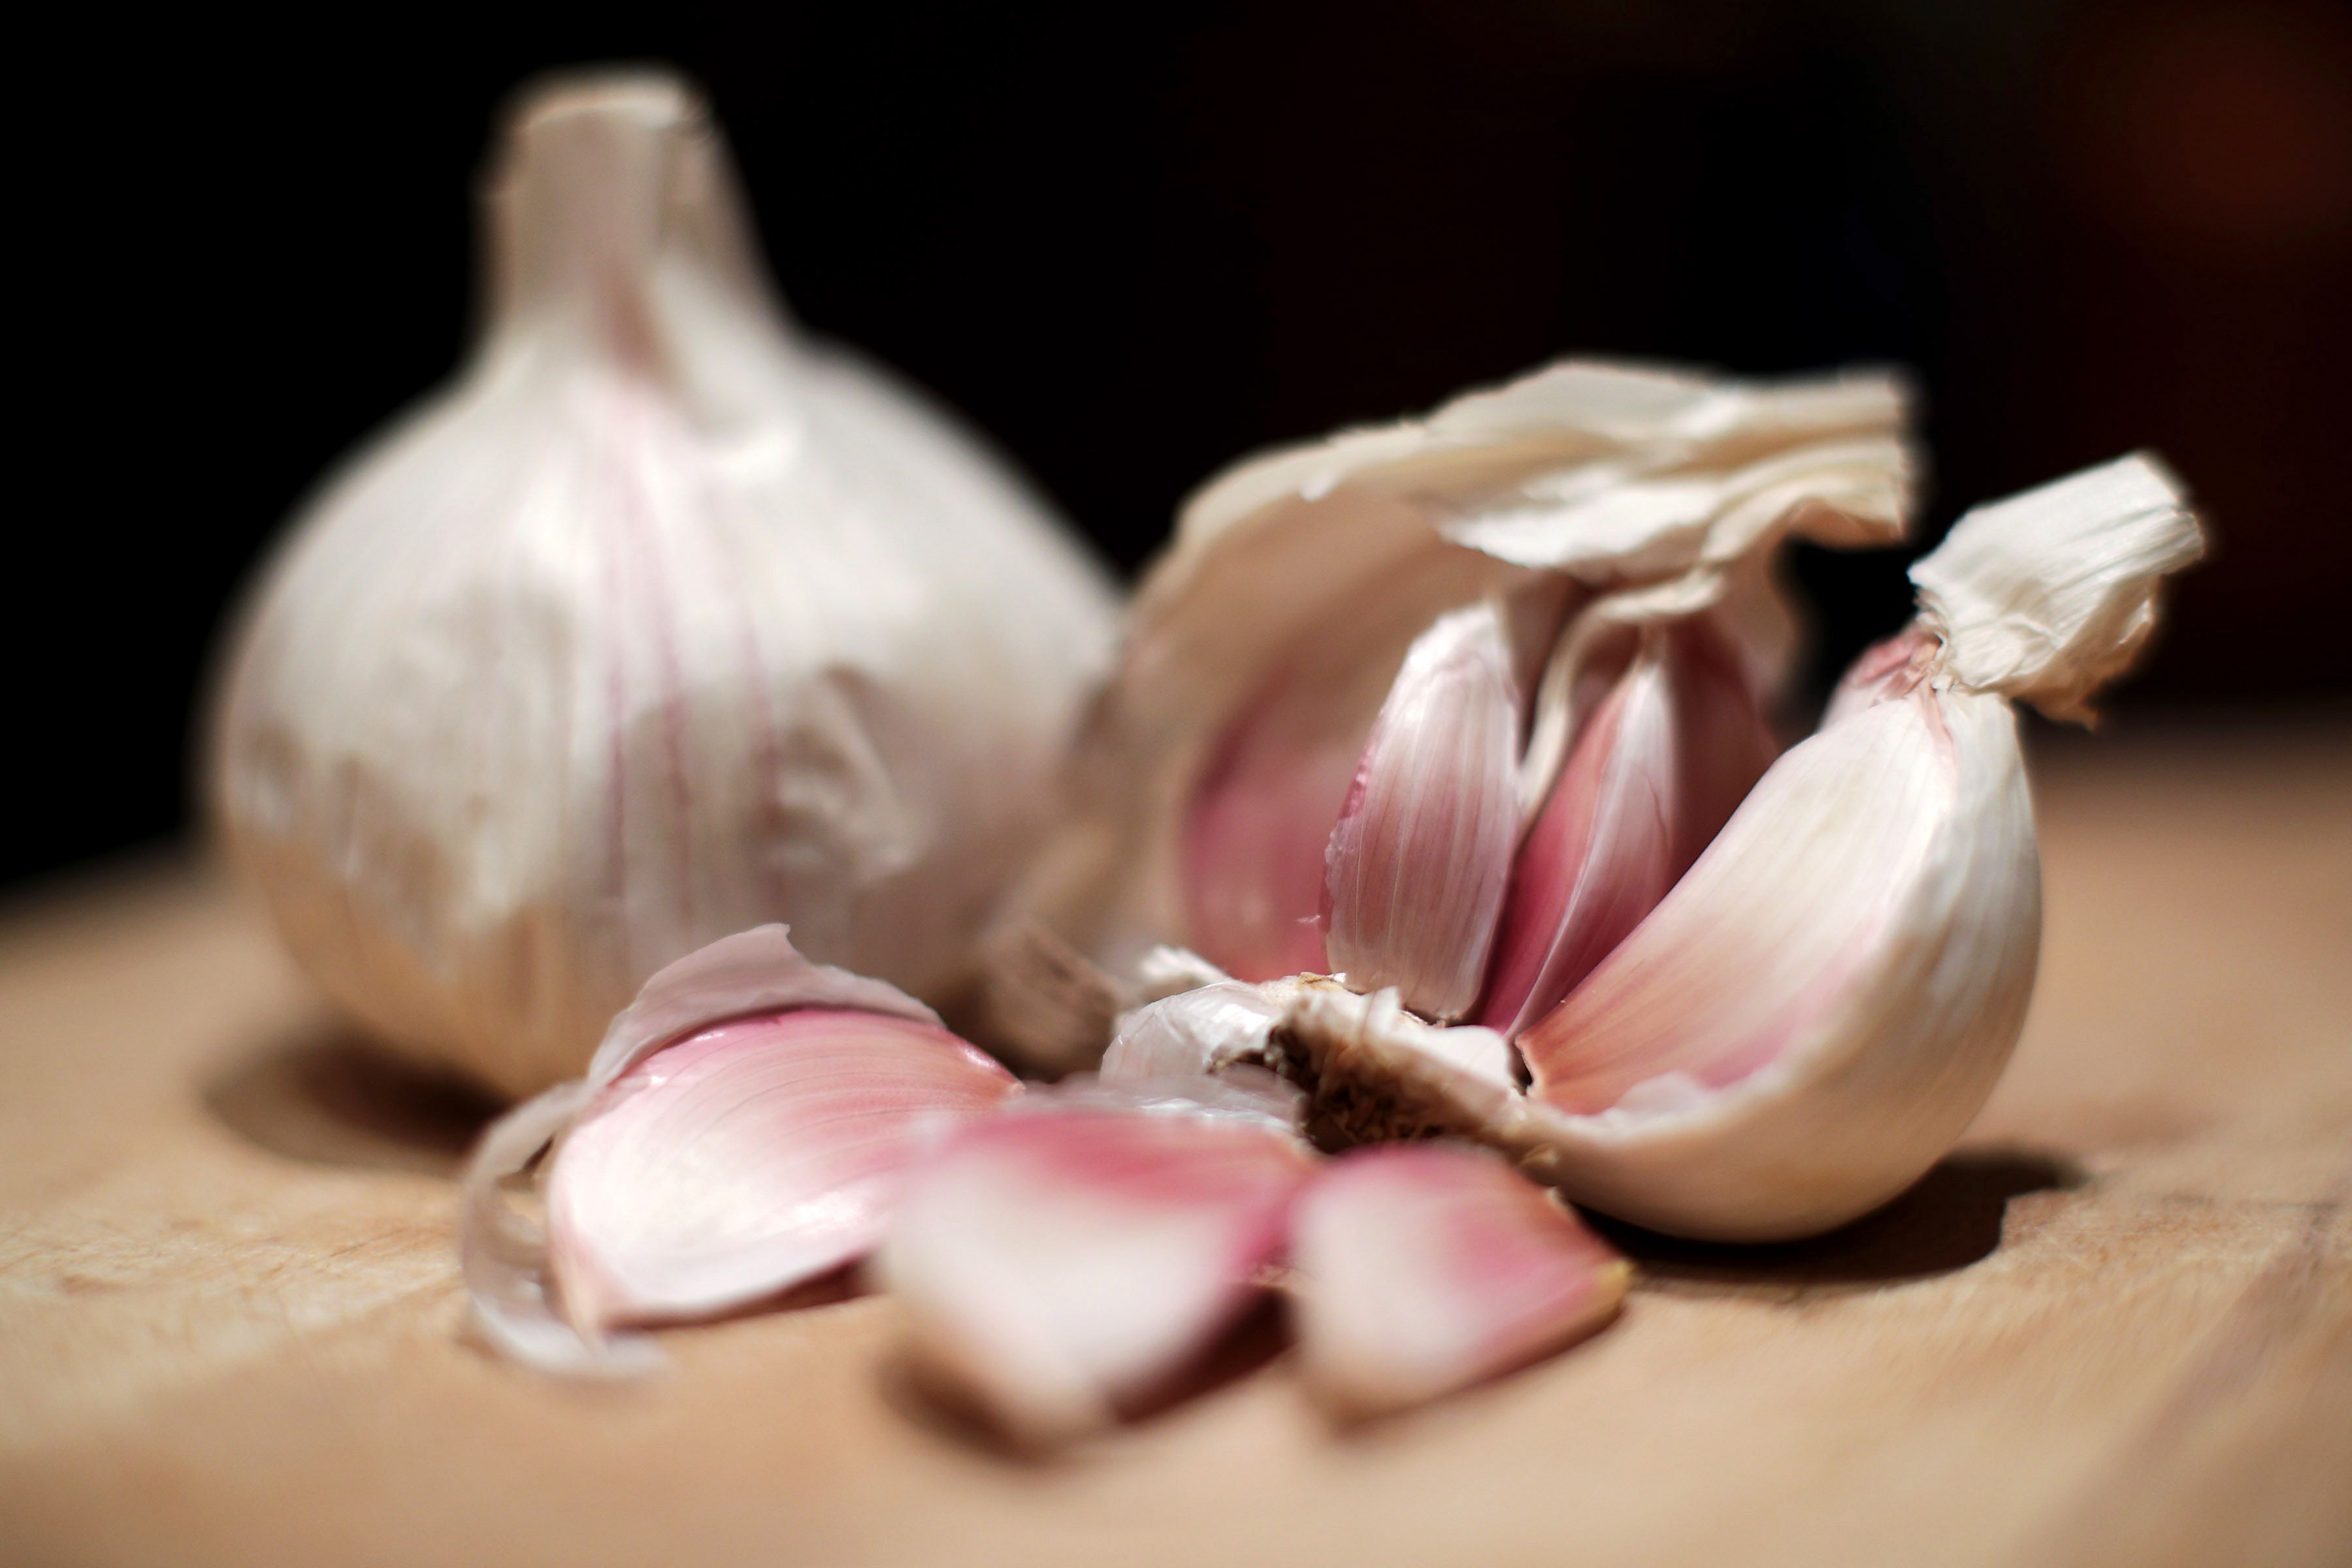 Cómo Pelar Ajos en 10 segundos 🧄 (Ig: JuanesSanchezP) #truco #lifehac, How to Peel Garlic Fast